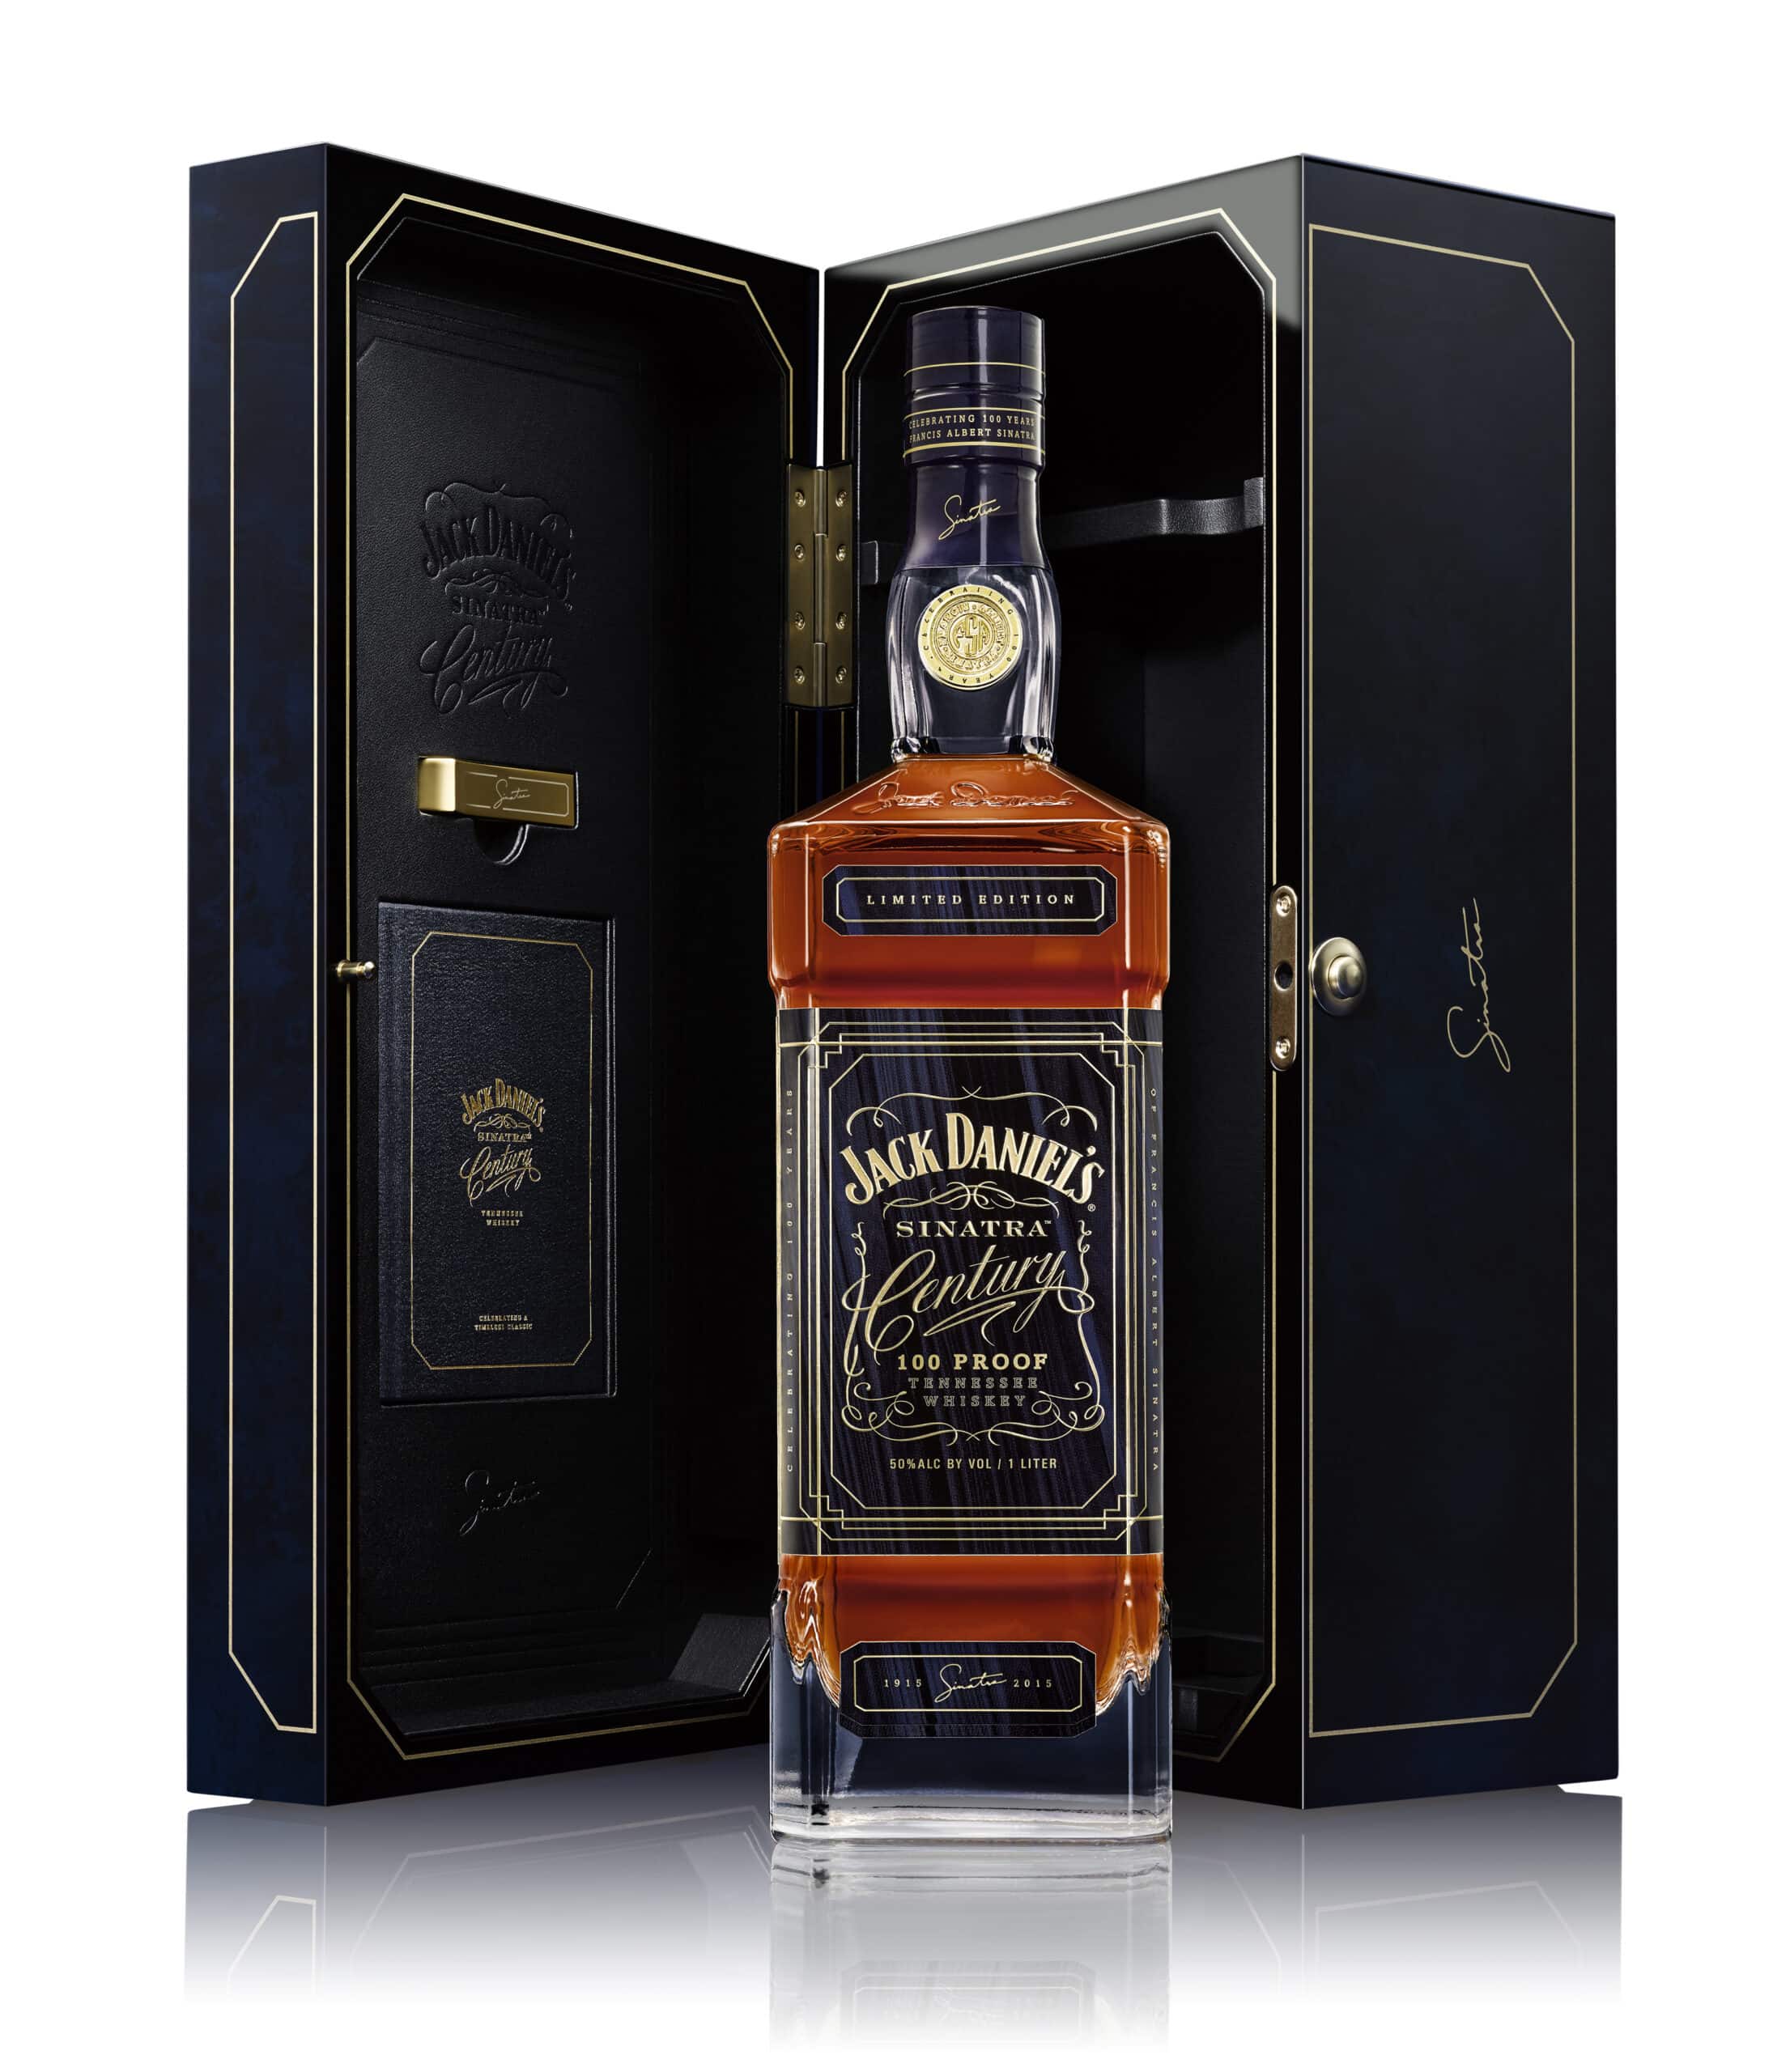 bottle of Sinatra Jack Daniels whiskey